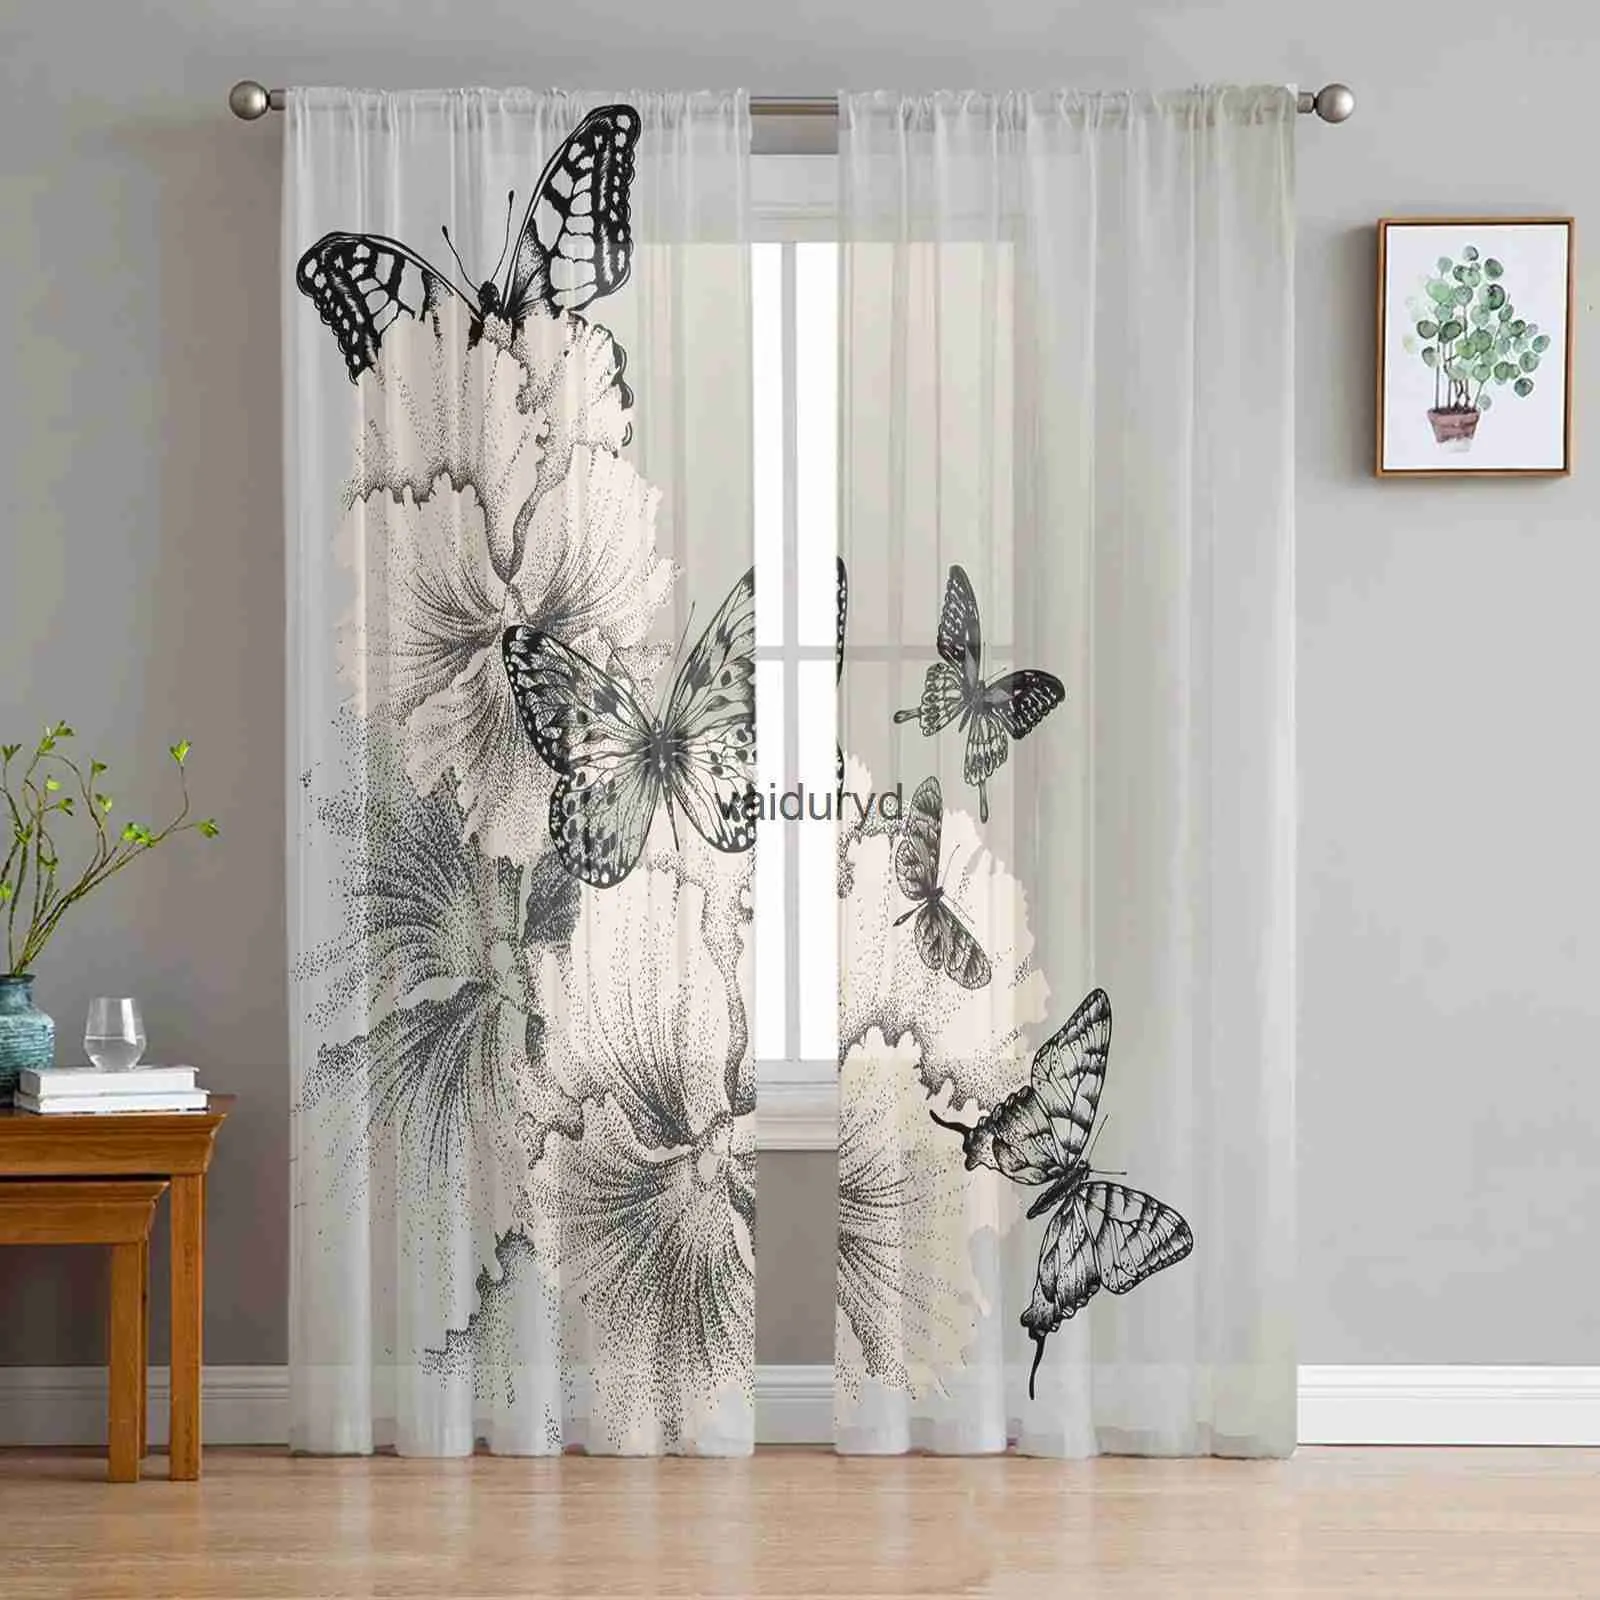 Черно-белые тюлевые шторы с бабочками и цветами для украшения гостиной, шифоновая прозрачная вуаль для кухни, спальни Curtainvaiduryd